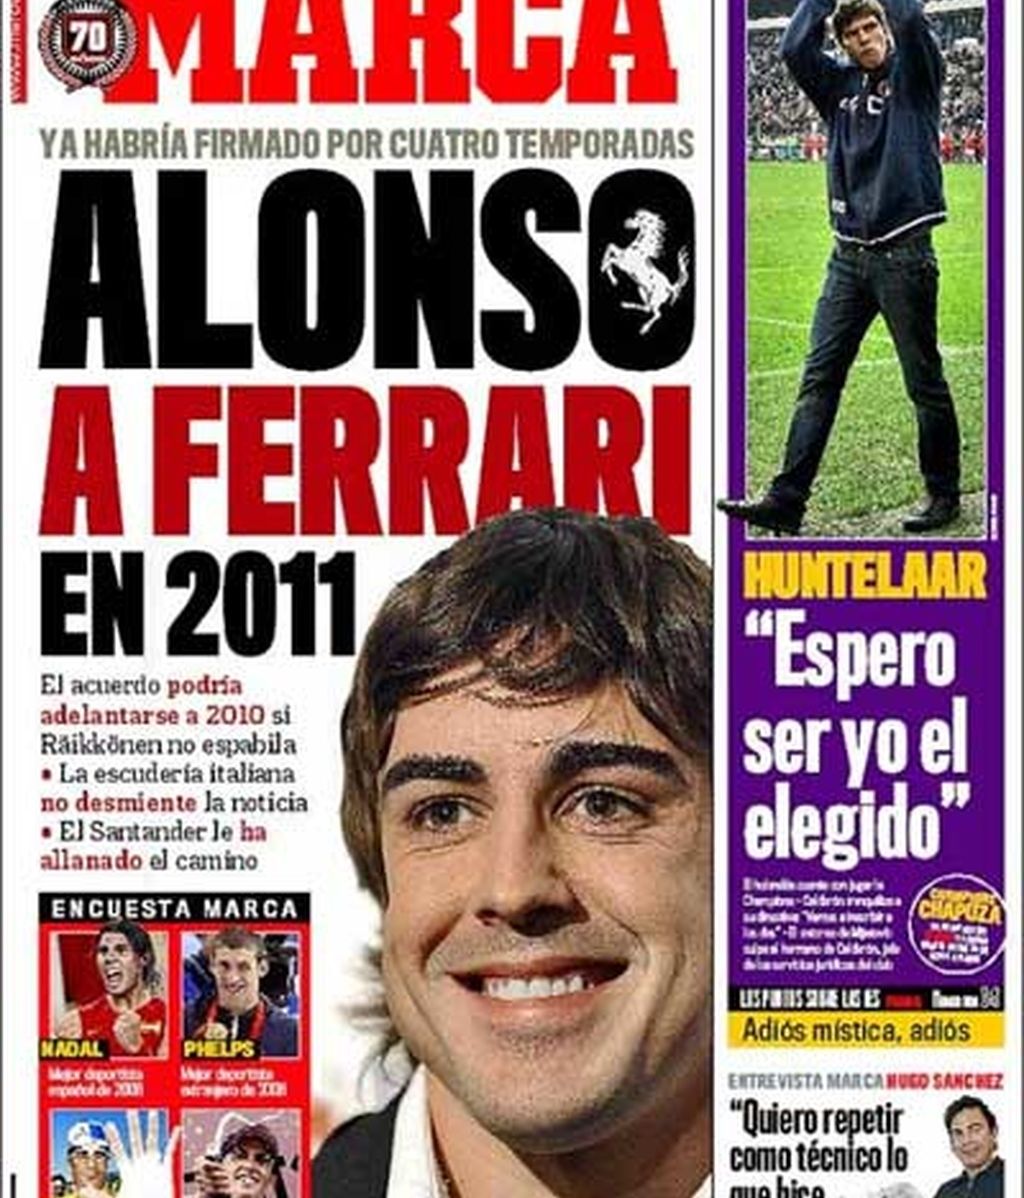 El posible pacto Alonso-Ferrari, en las portadas